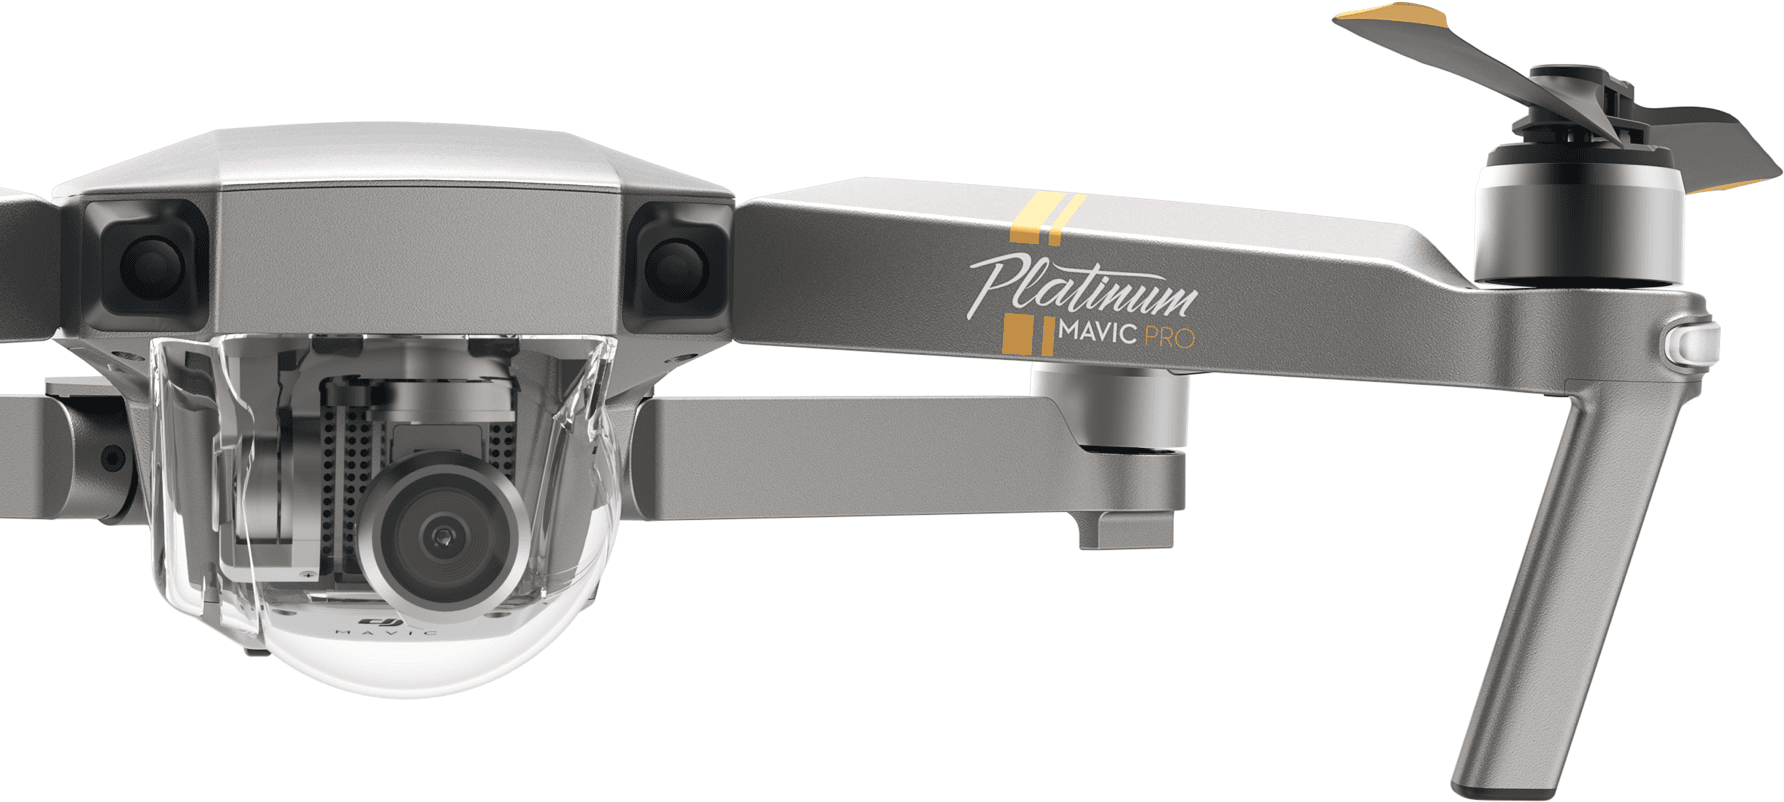 DJI stellt auf der IFA 2017 zwei neue Drohnen aus - DJI Phantom